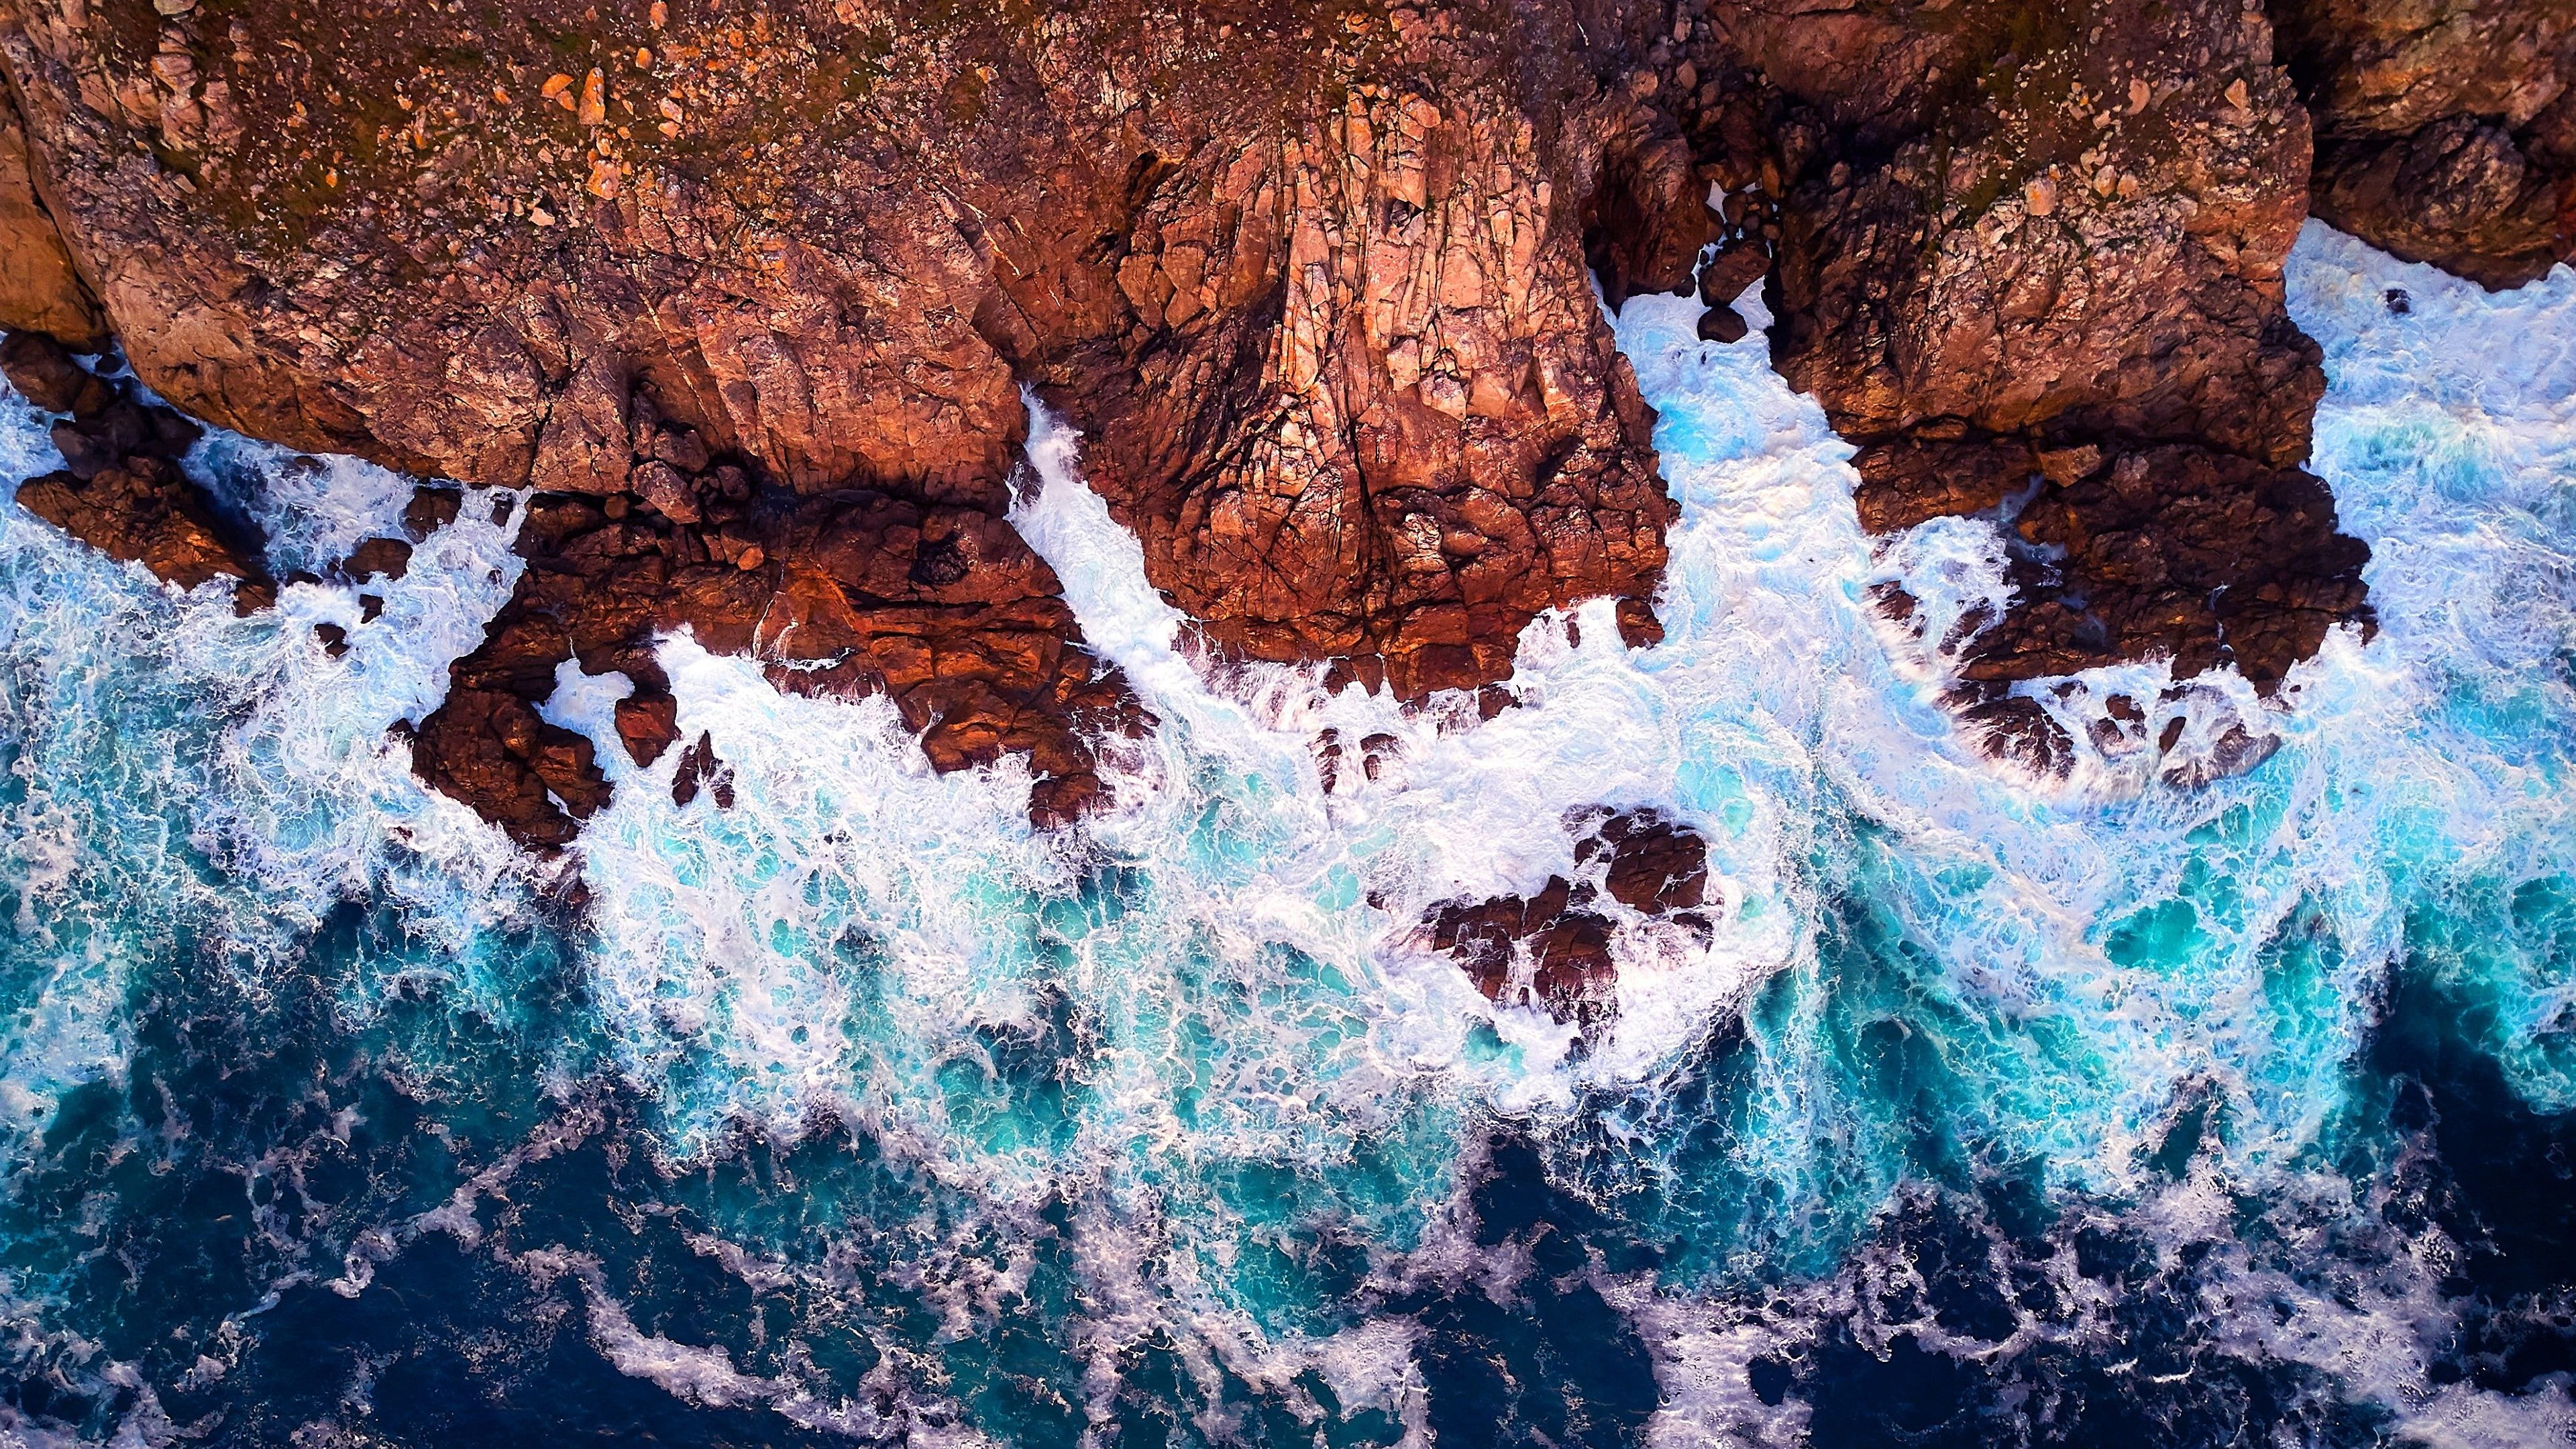 Atlantic Ocean, Blue water rock, Foamy waves, Majestic geology, 3840x2160 4K Desktop